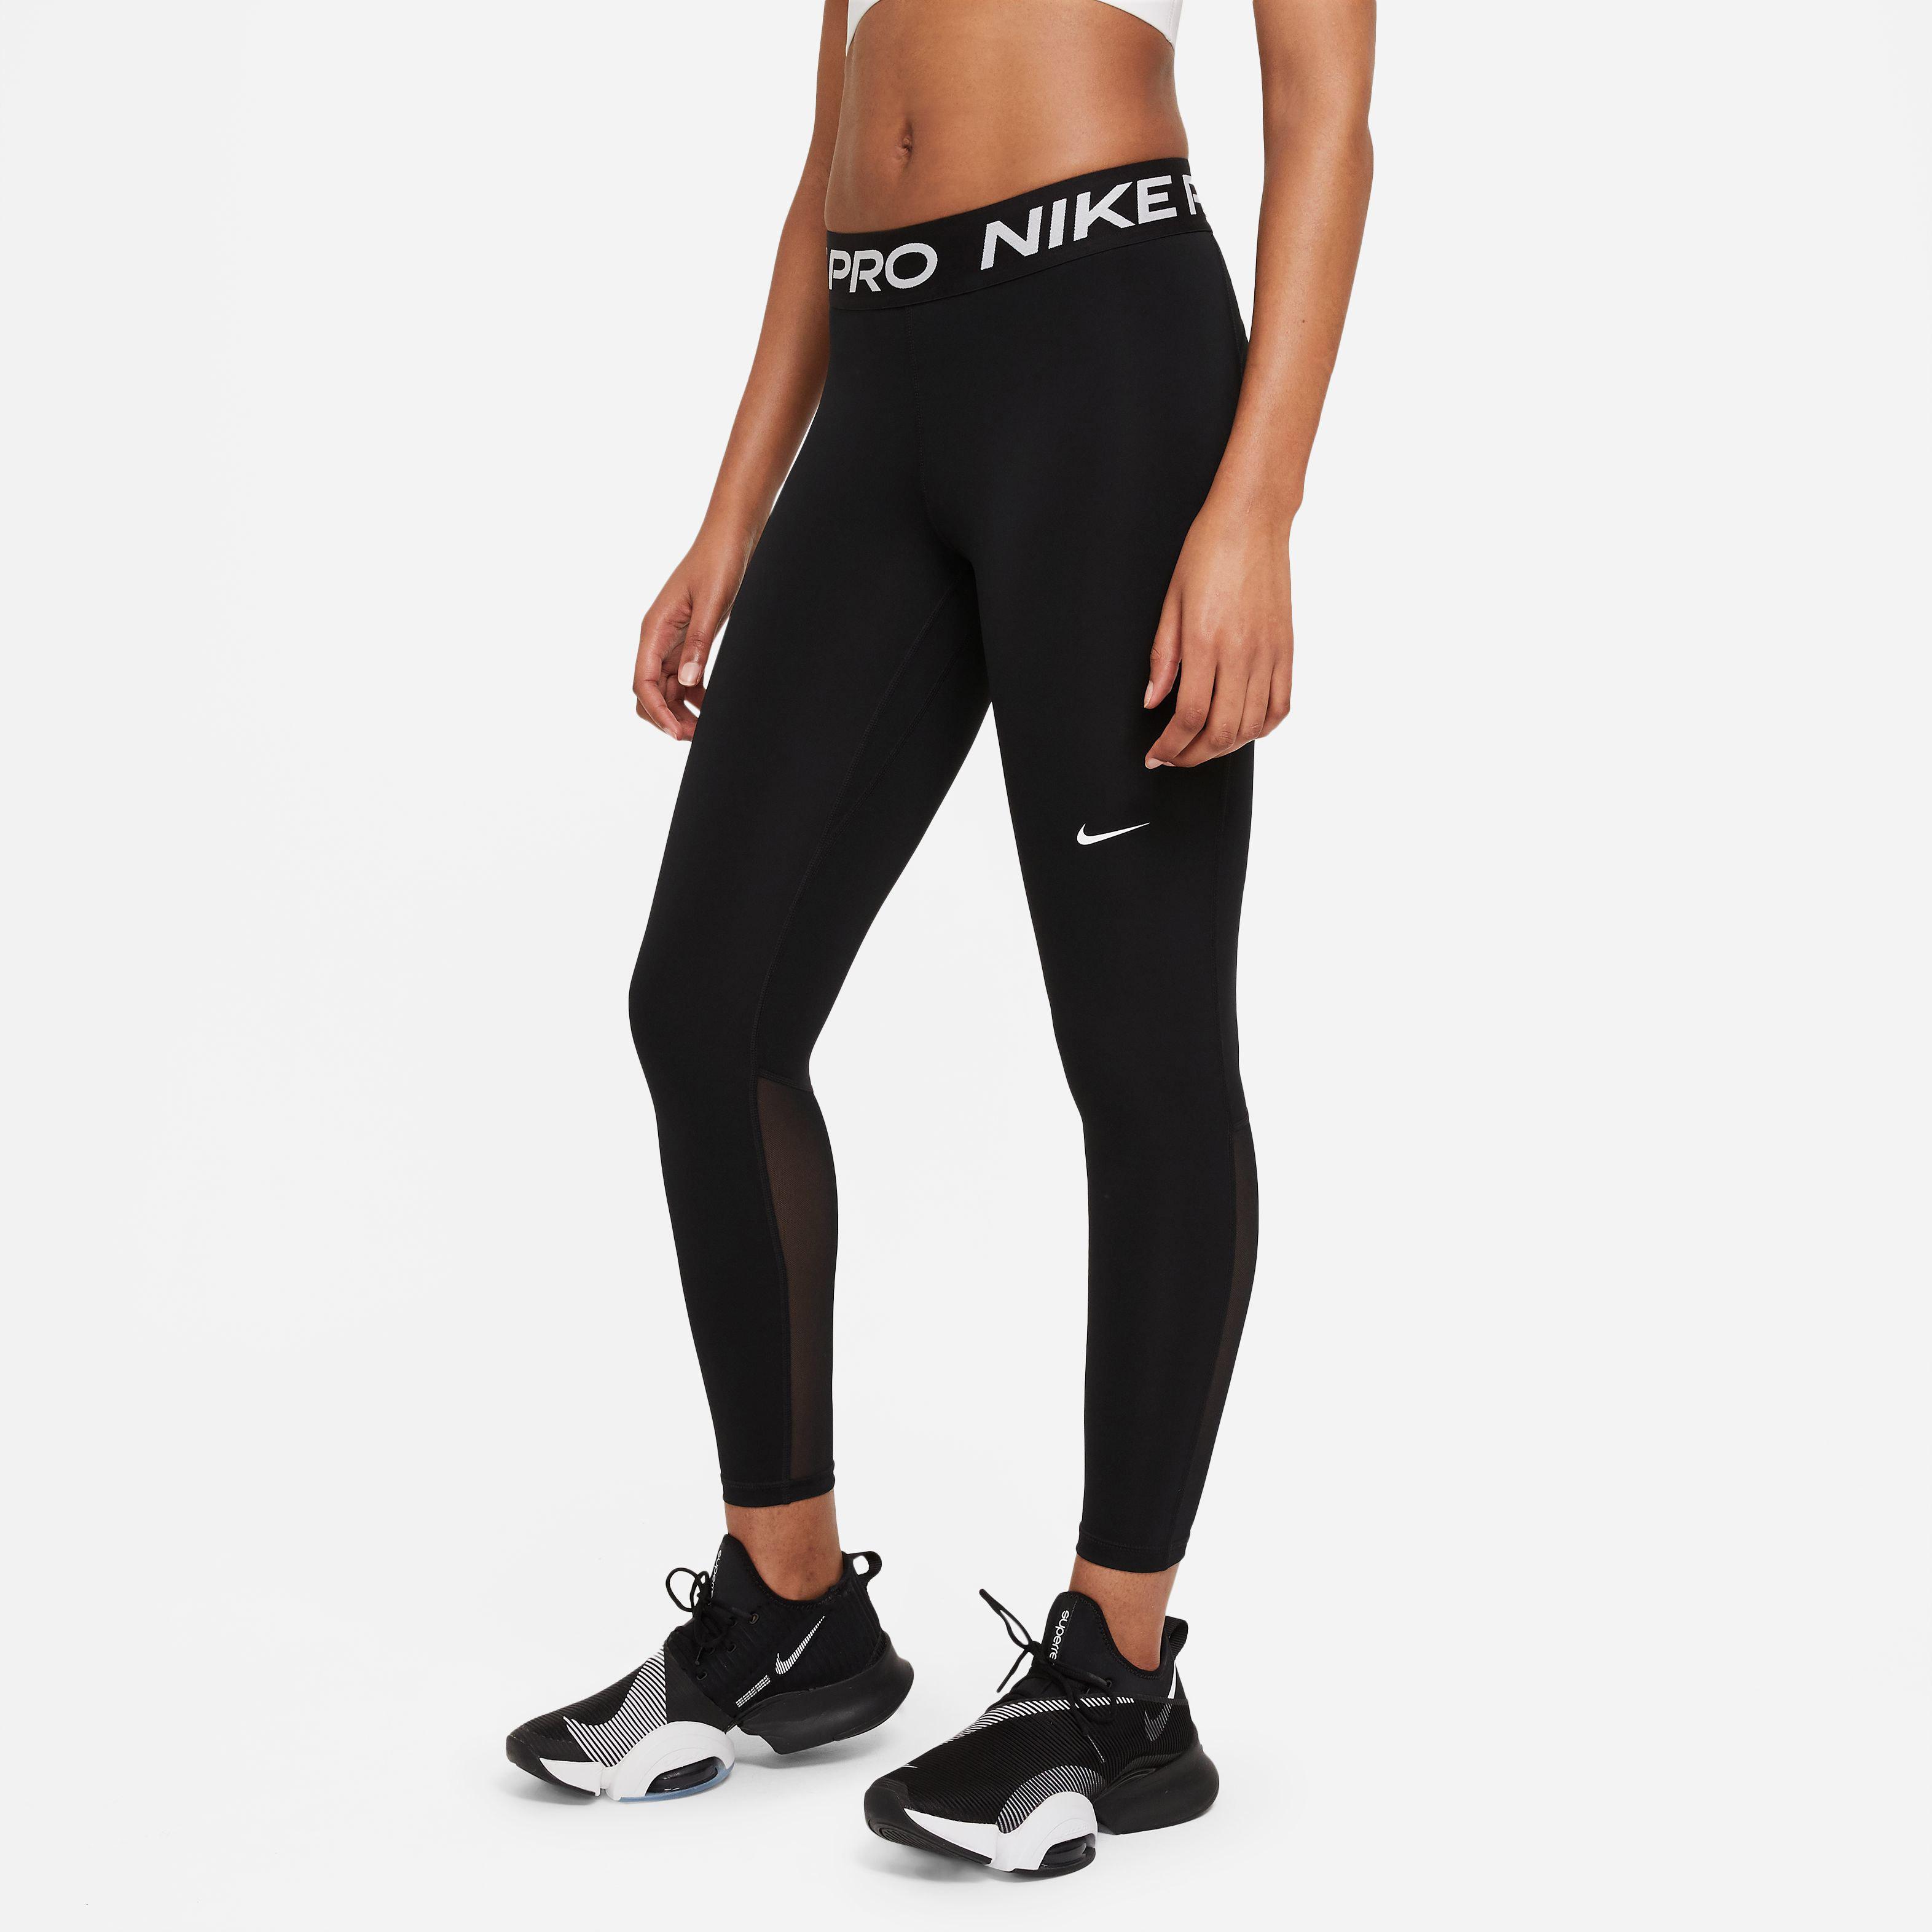 Nike PRO 365 Tights Damen black-white im Online Shop von